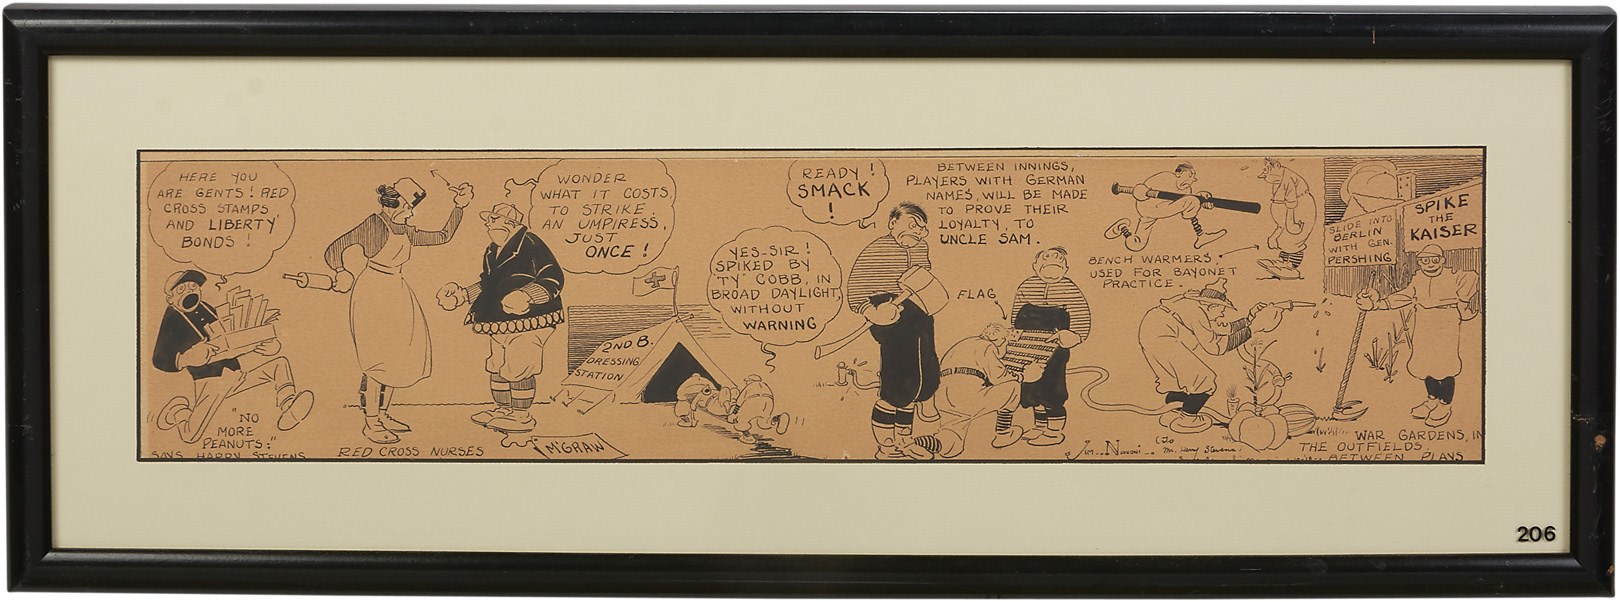 1910s Baseball & Presidential Comic Art Presented to Harry M. Stevens - from the Harry M. Stevens Auction (5)